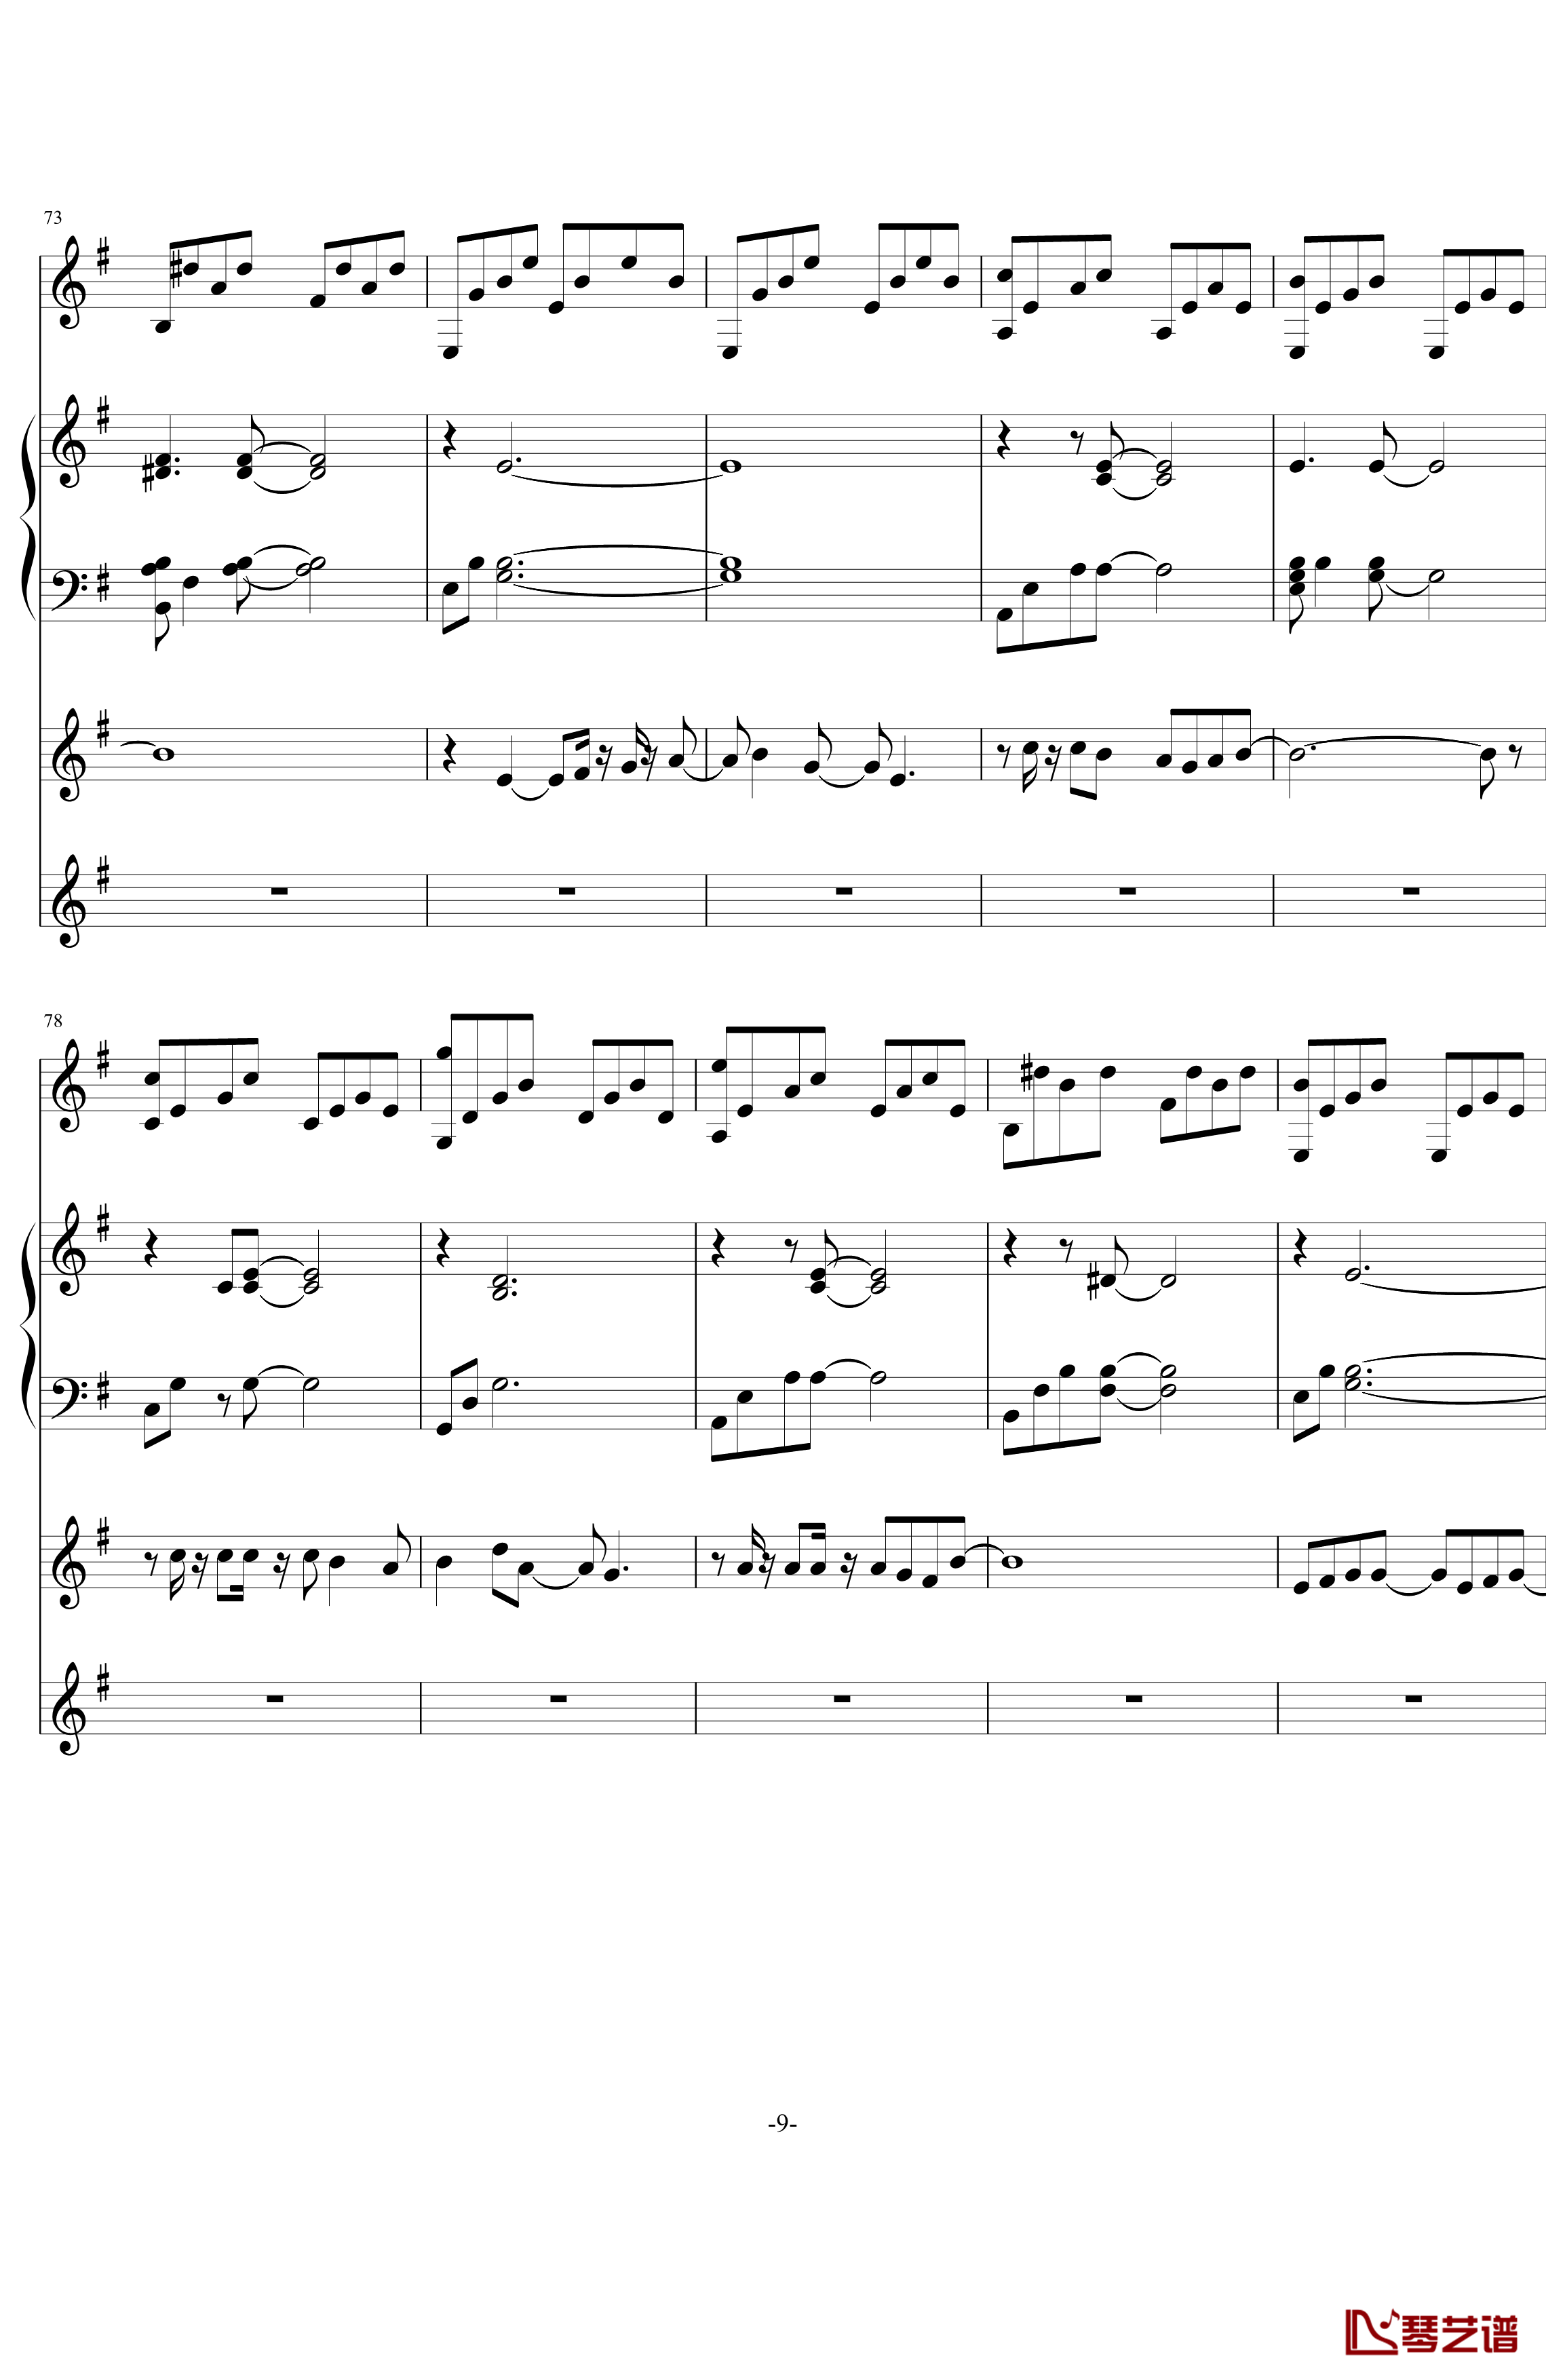 中提琴协奏版钢琴谱-含有钢琴独奏-老奠9